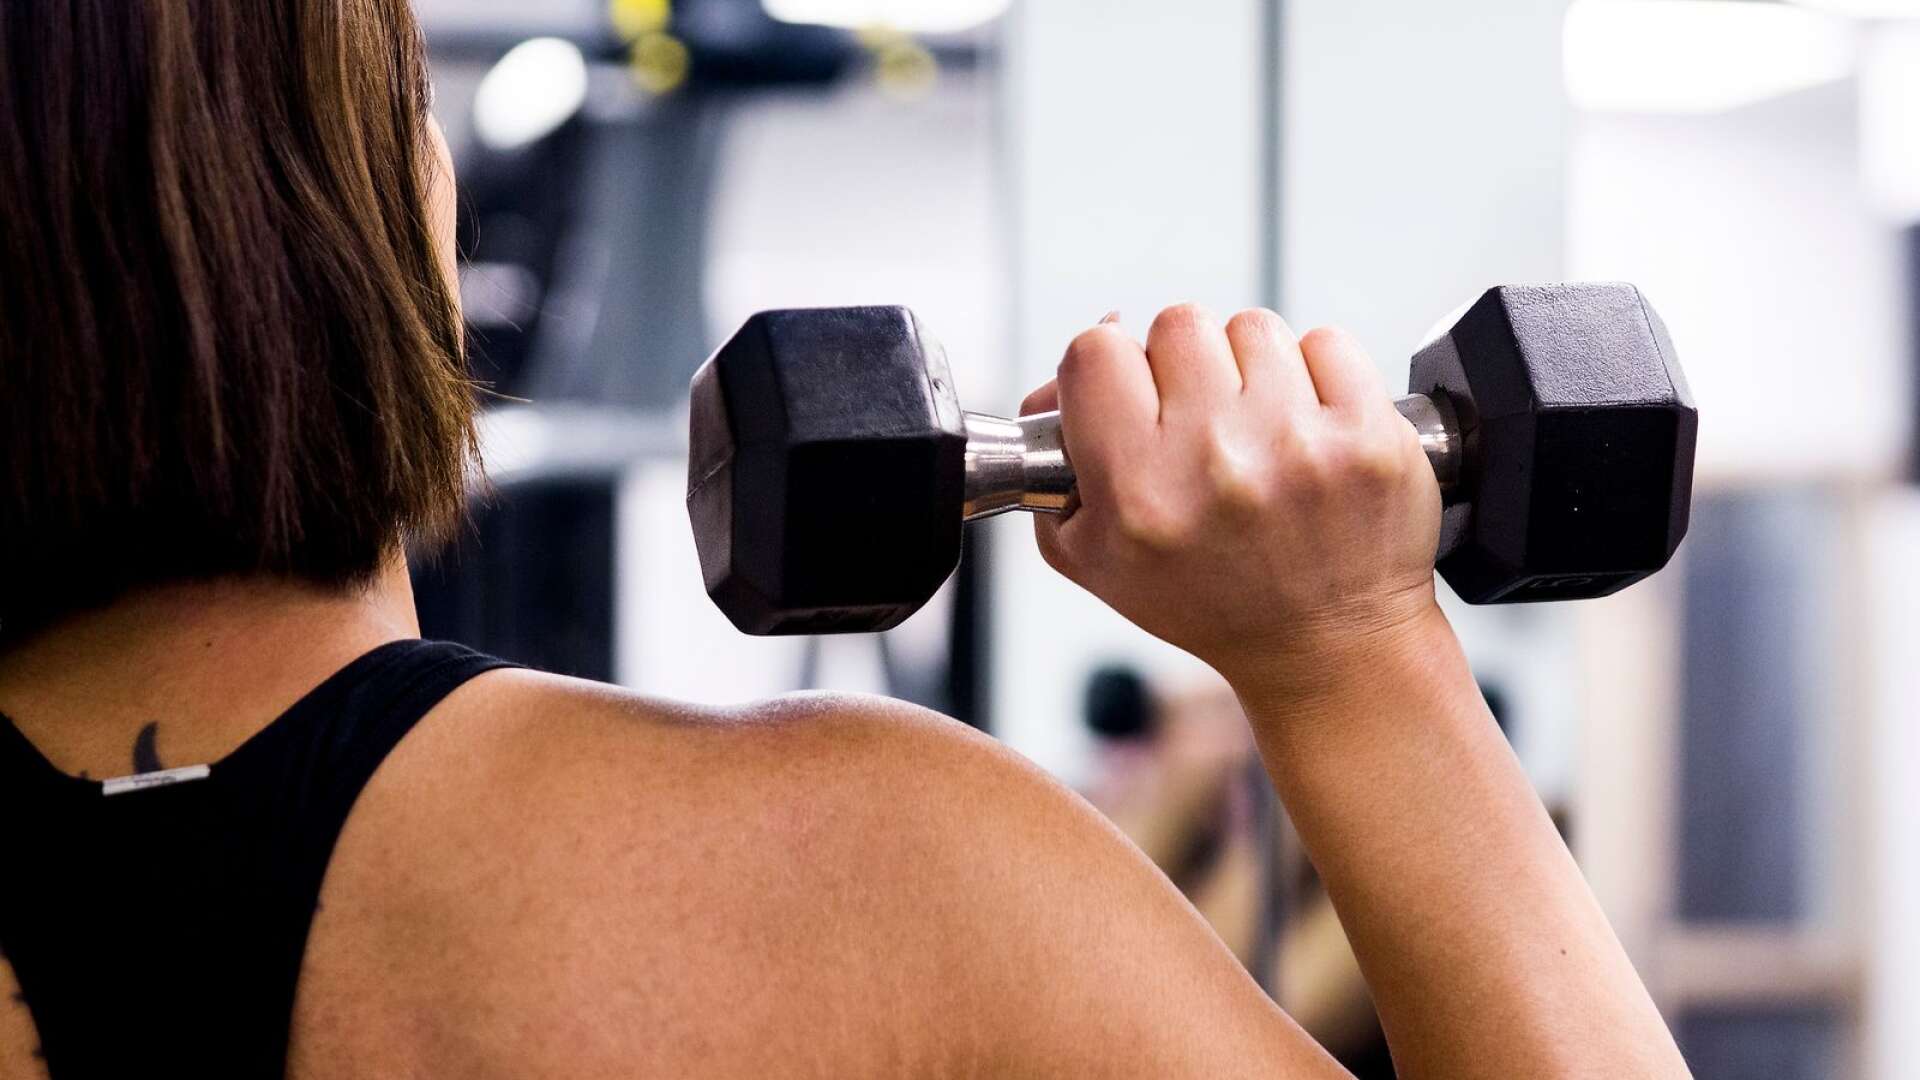 Friskvårdsbidraget kan till exempel användas för styrketräning på gym.